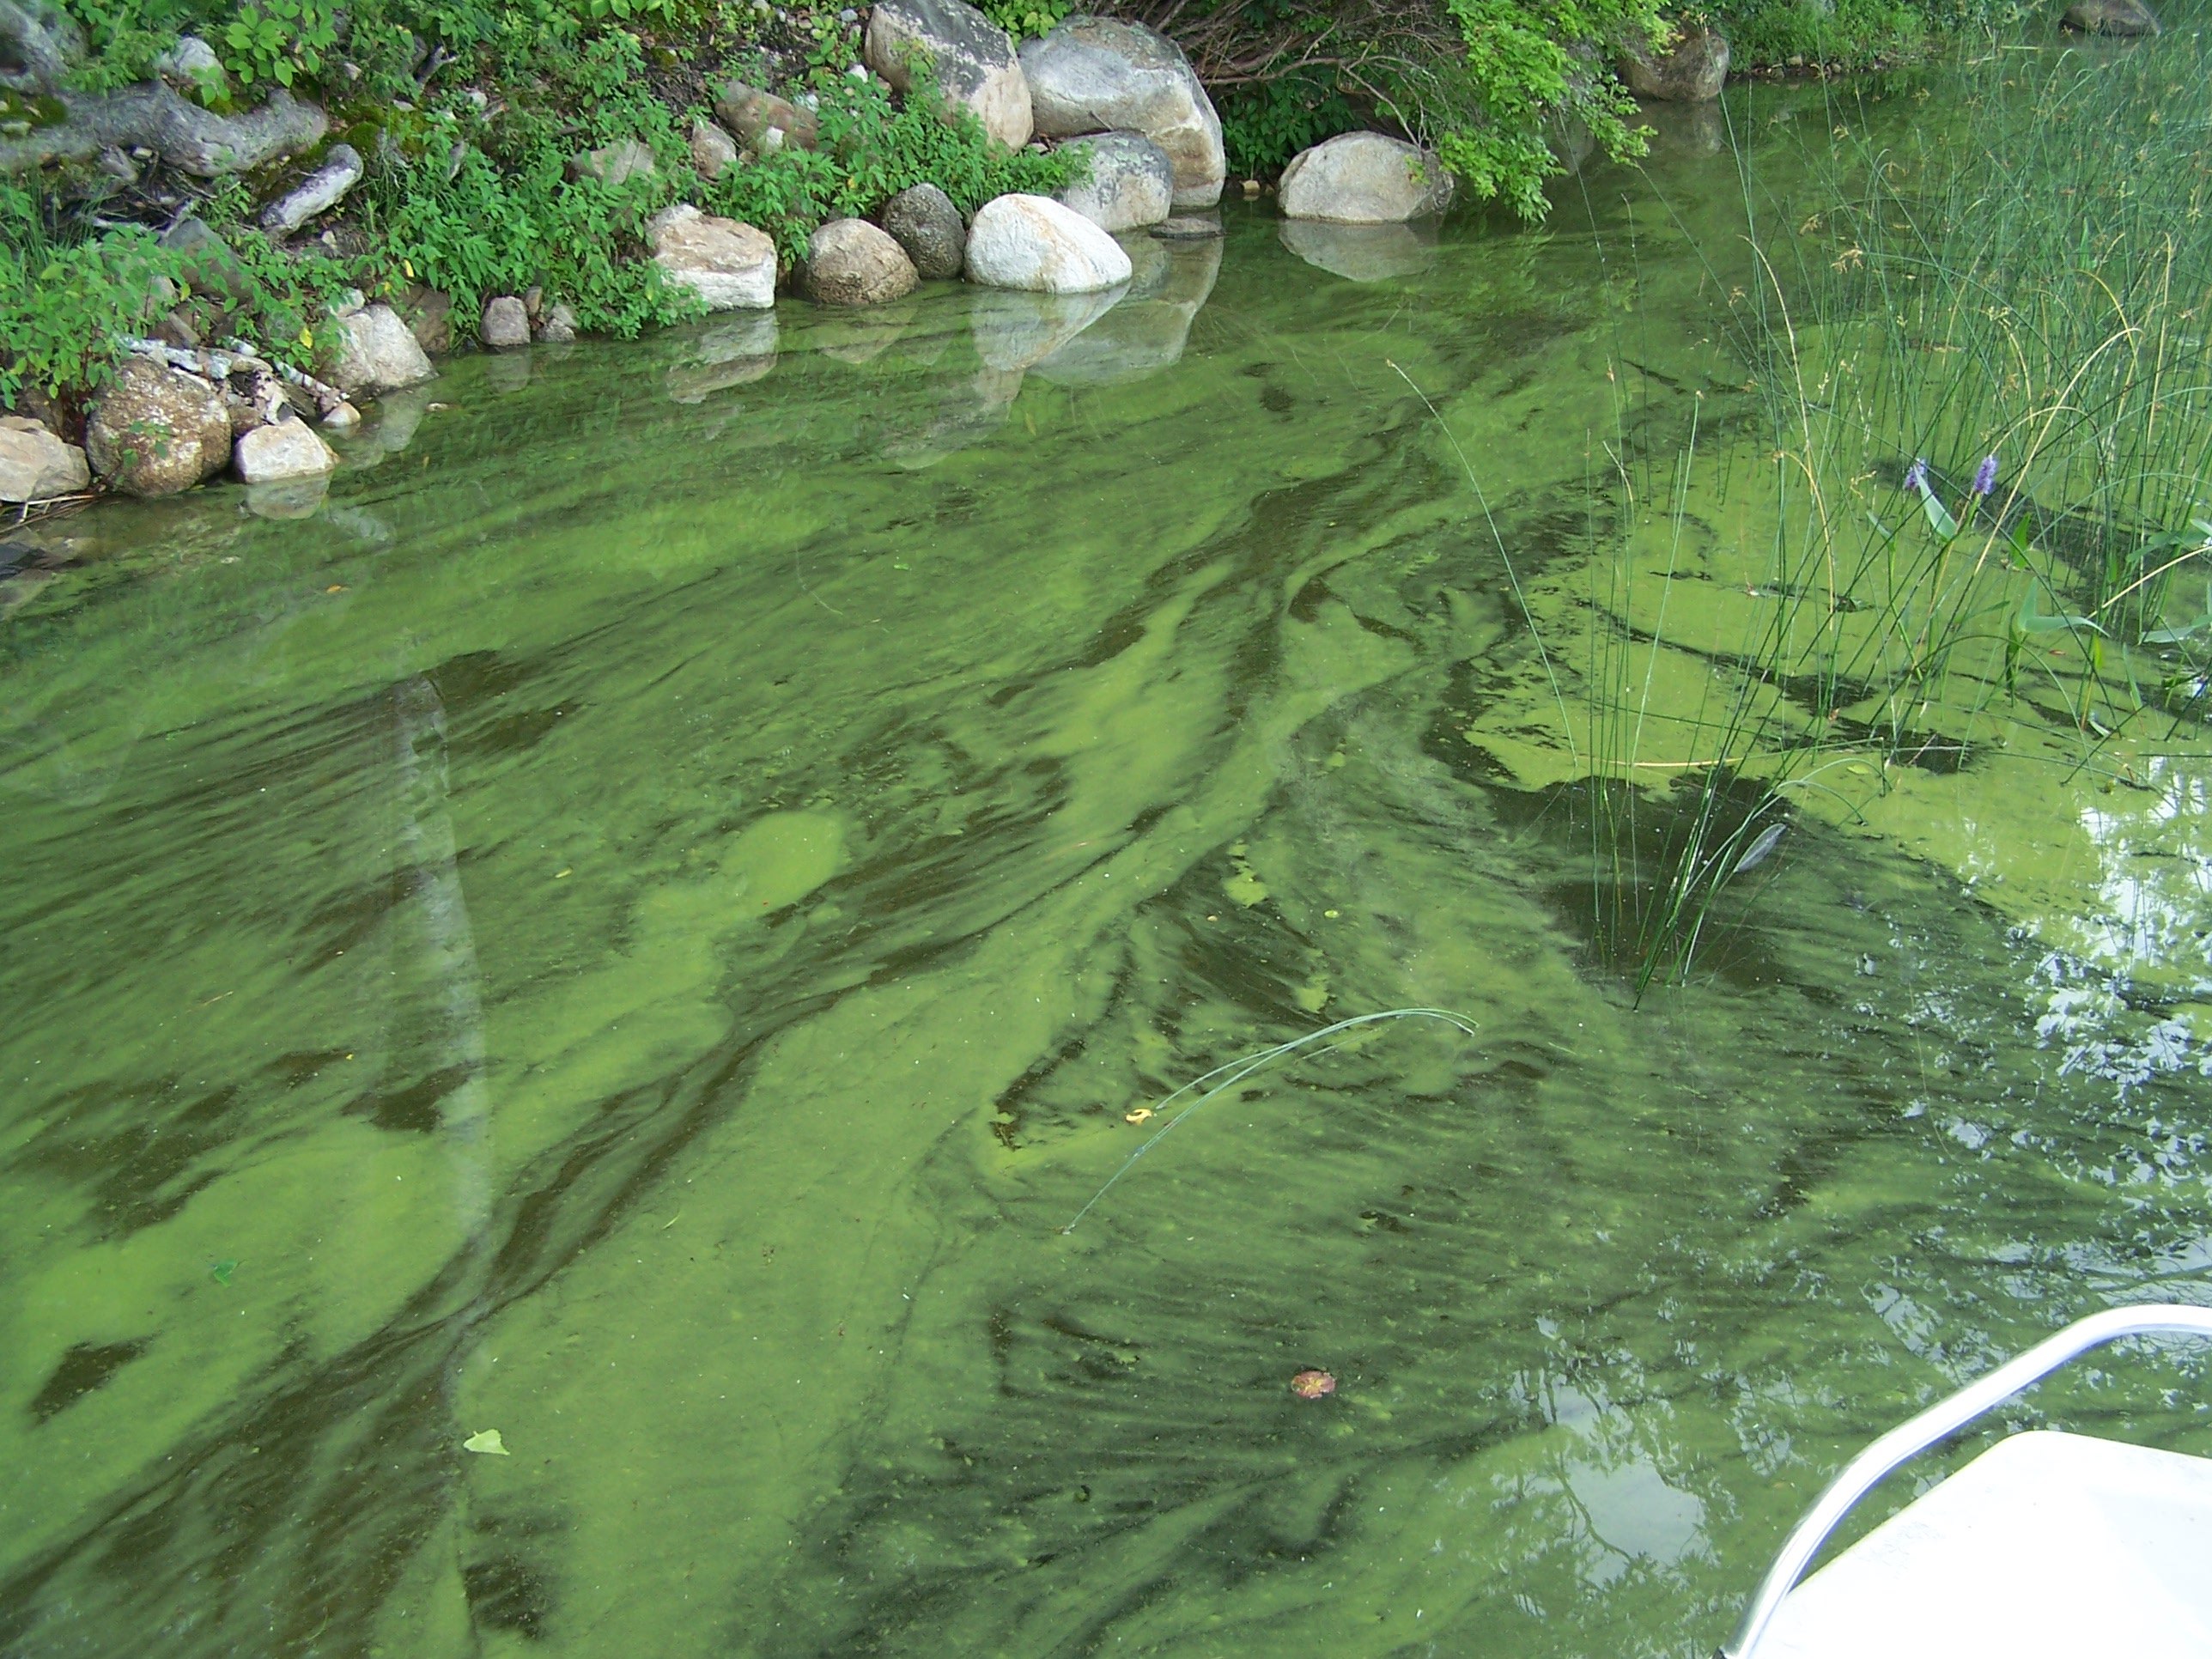 Цветет водоем. Цветение воды цианобактерии. Цианобактерии сине-зеленые водоросли. Синезеленые водоросли цианеи. Цианобактерии вызывают цветение воды.